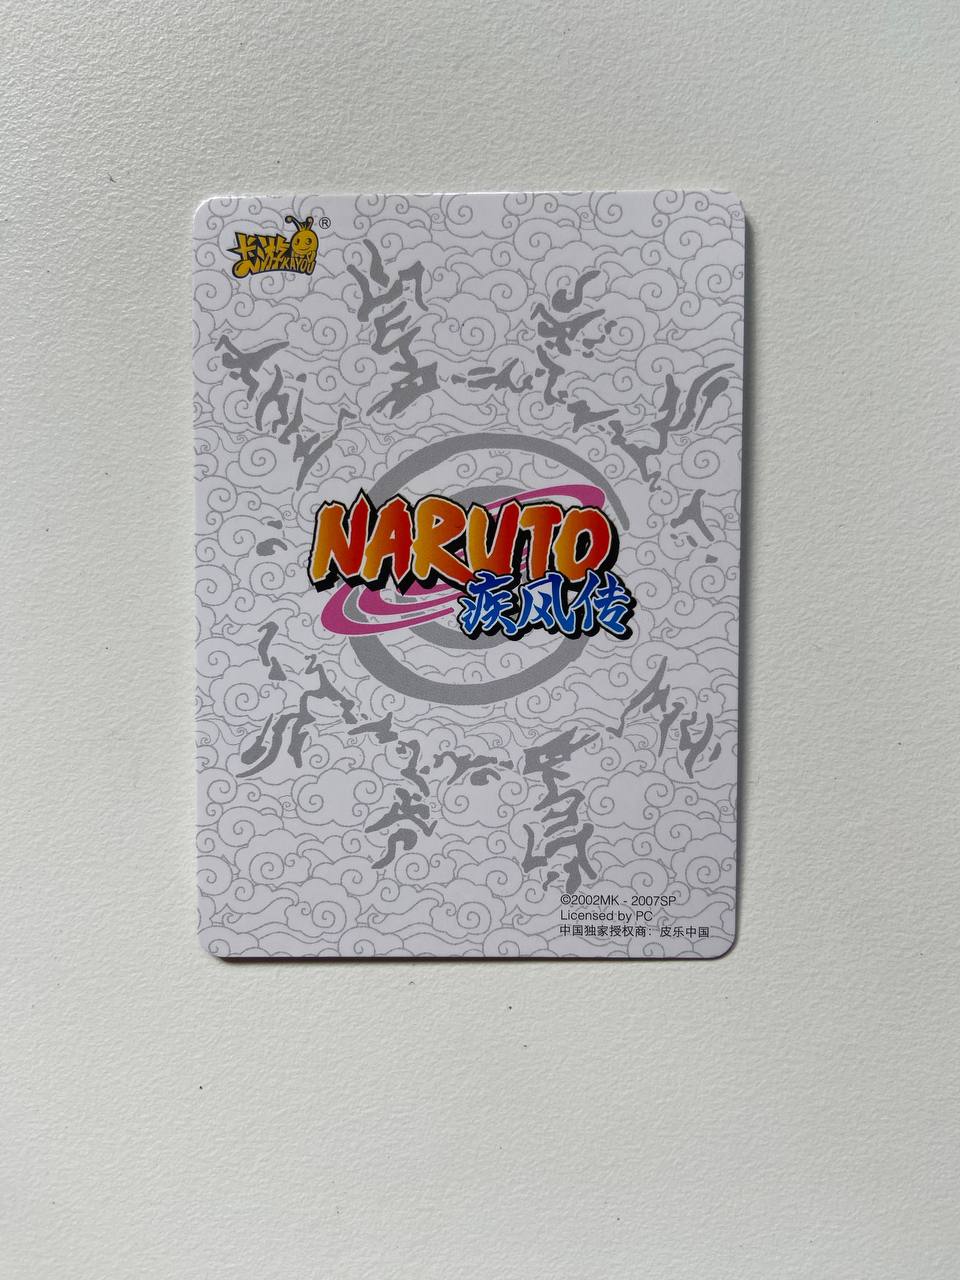 Naruto Kayou 20Th Anniversary